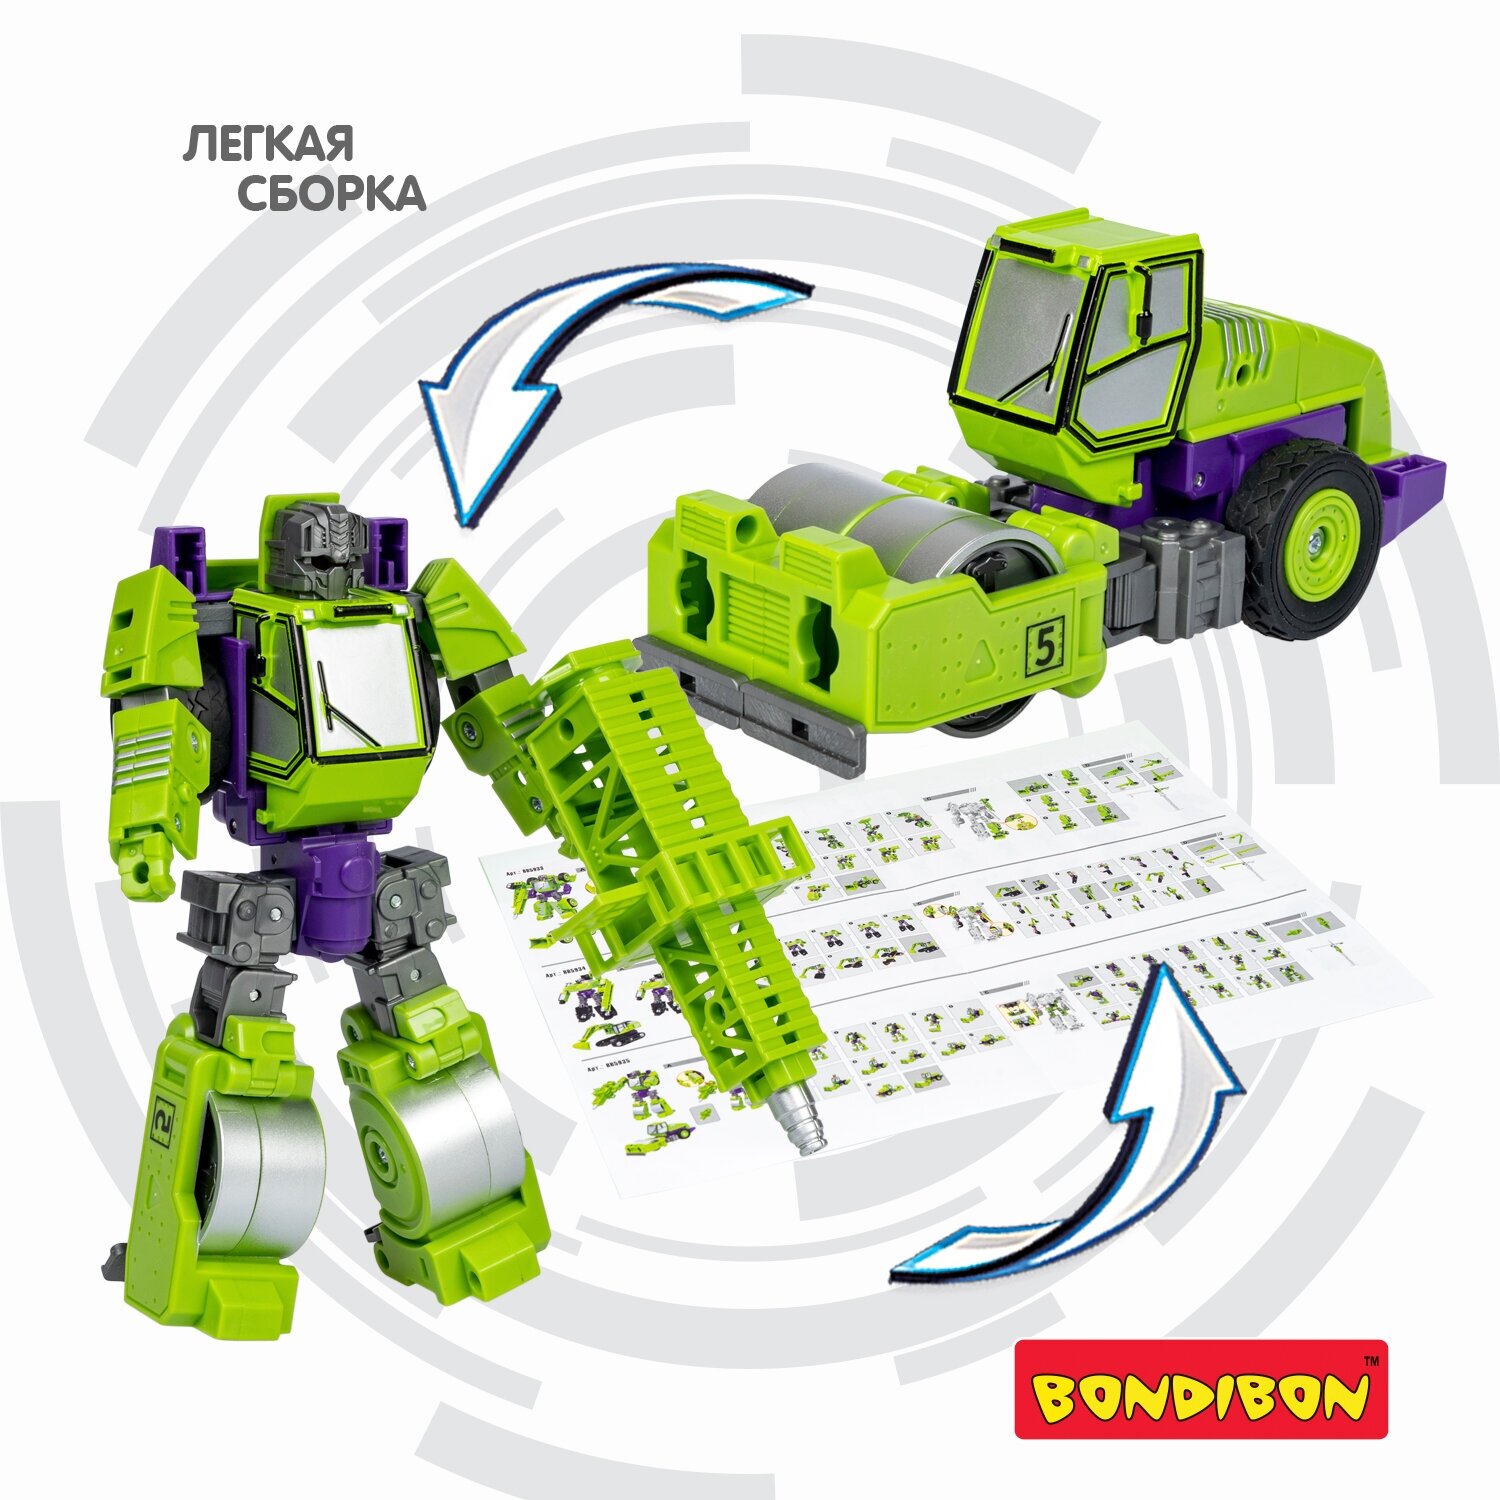 Трансформер 2в1 BONDIBOT Bondibon, робот-строит. техника ( дорожный каток), BOX 28,5x23x9,5 см, цвет з